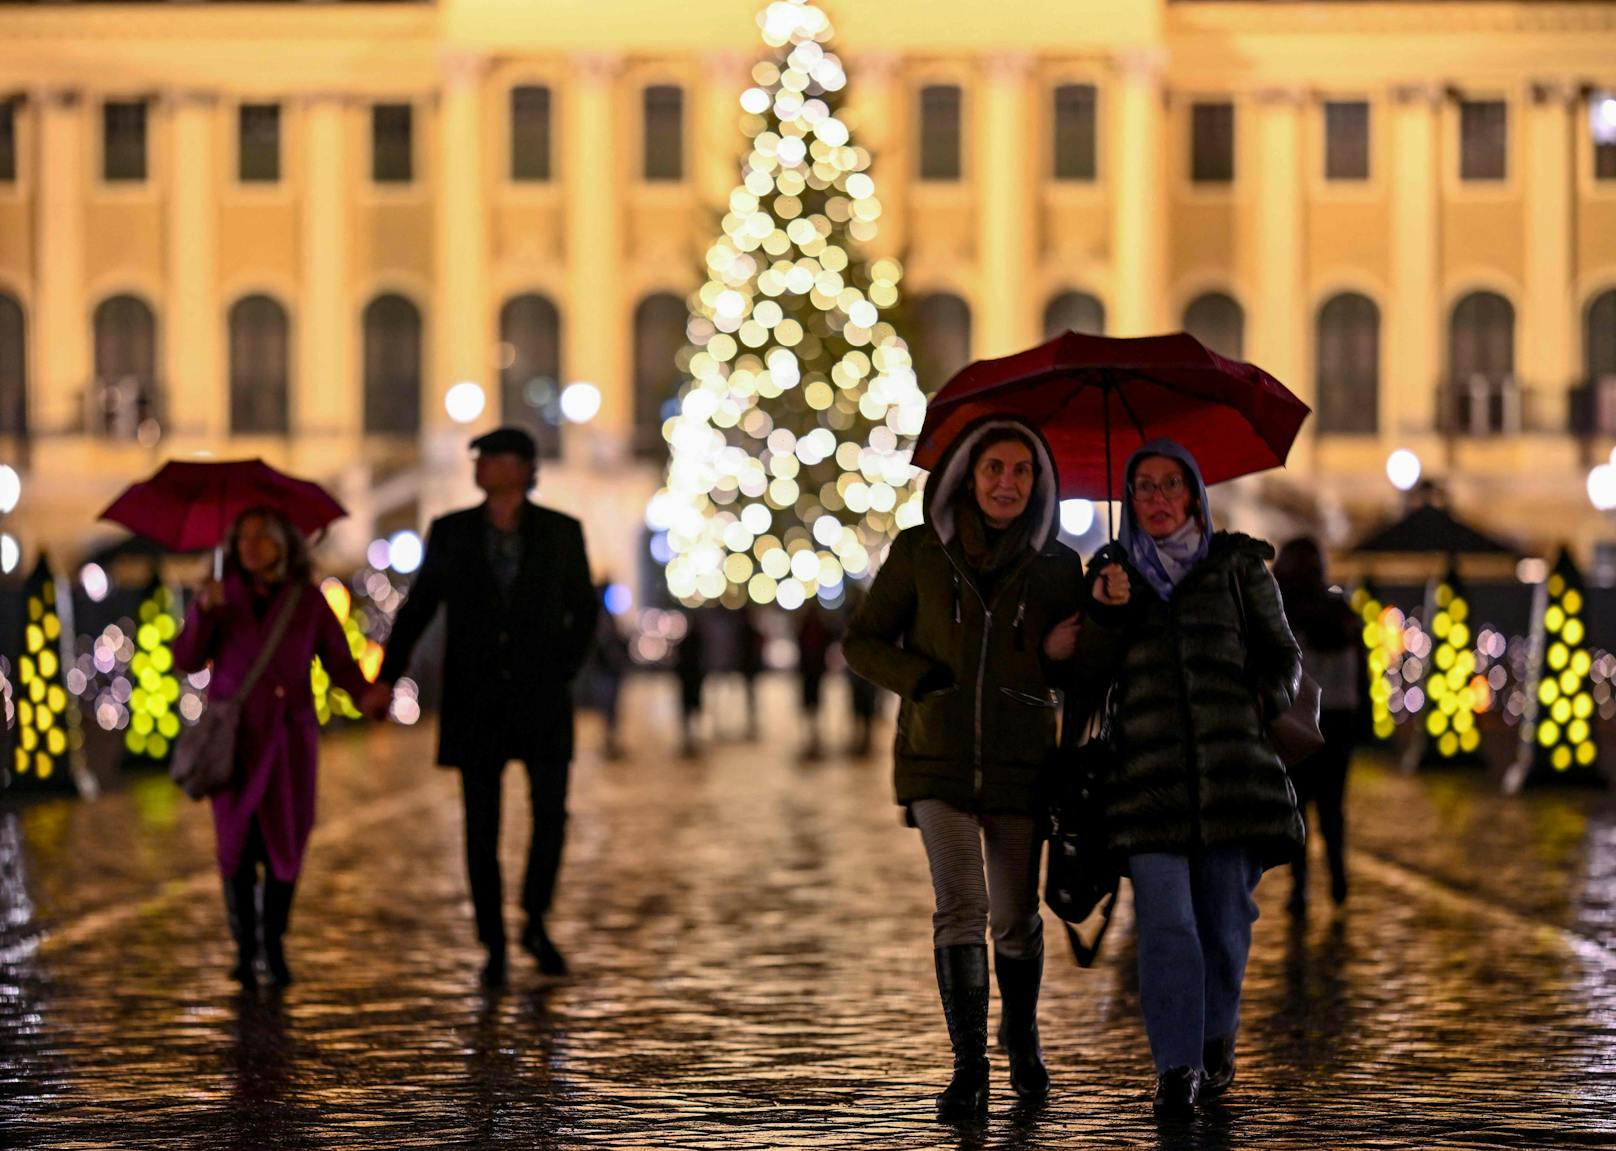 Regen statt Schnee, 13 Grad statt Frost: So wird sich der 24. Dezember in Österreich regional zeigen.